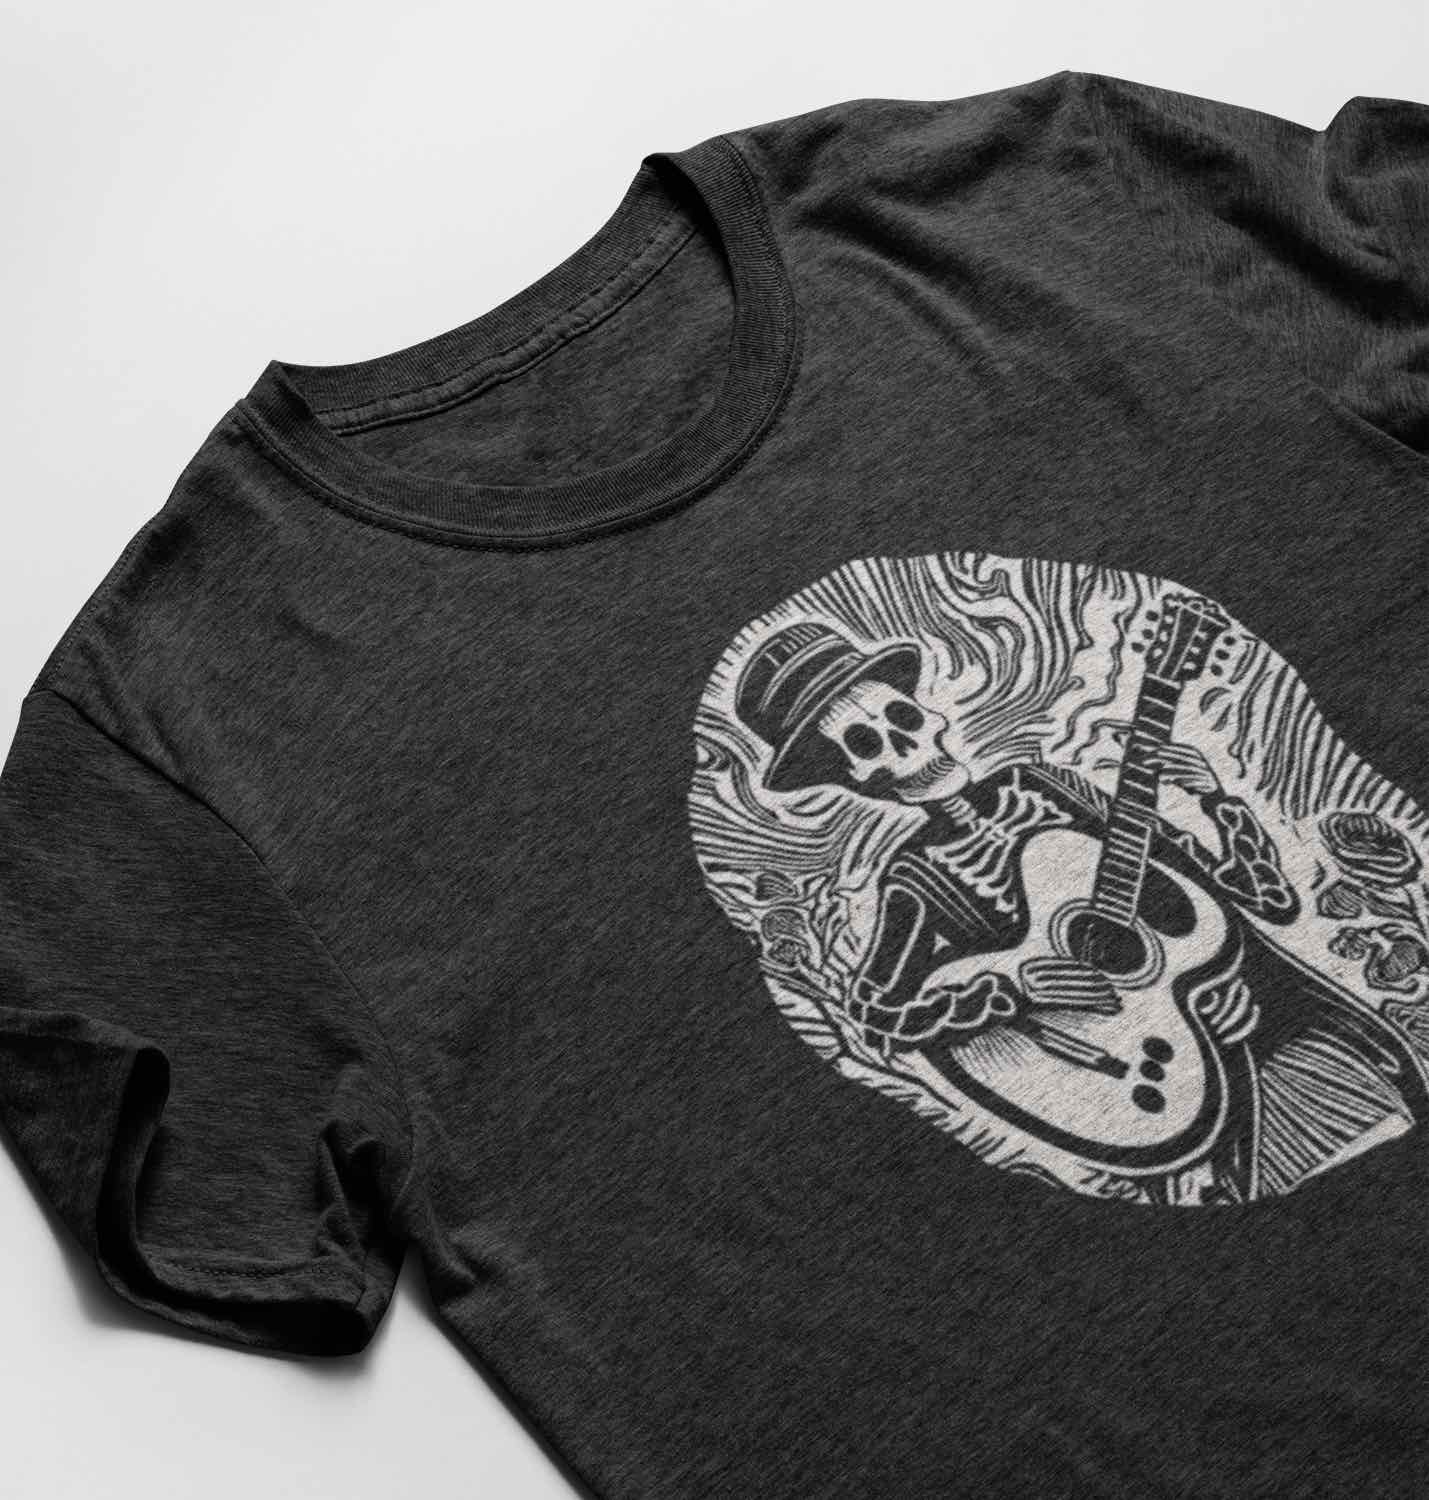 Skeleton Playing Guitar Shirt SHIRT HOUSE OF SWANK